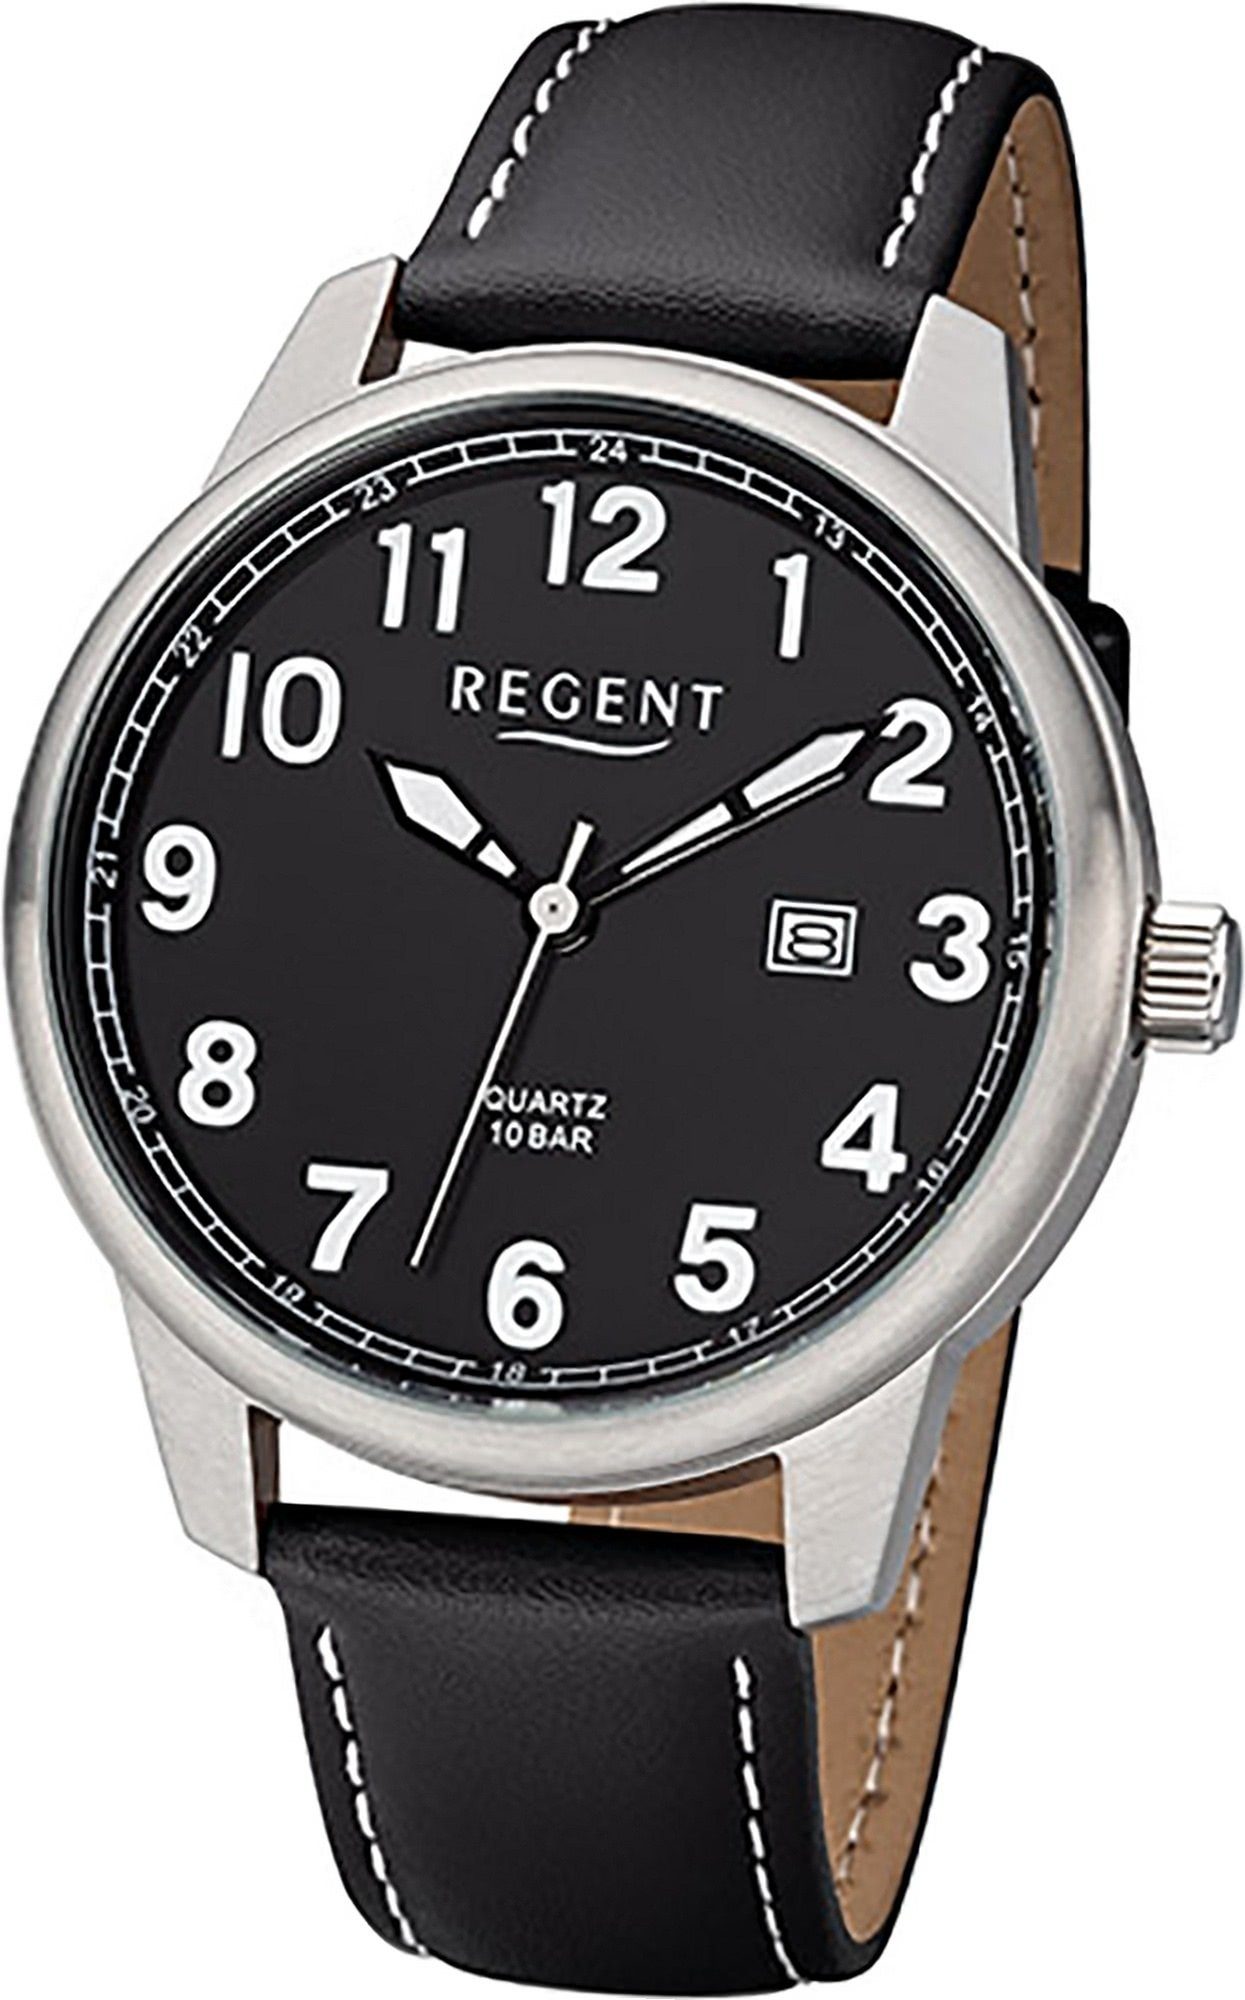 Regent Quarzuhr Regent Leder Herren Uhr F-1238 Analog, Herrenuhr Lederarmband schwarz, rundes Gehäuse, groß (ca. 41mm) | Quarzuhren